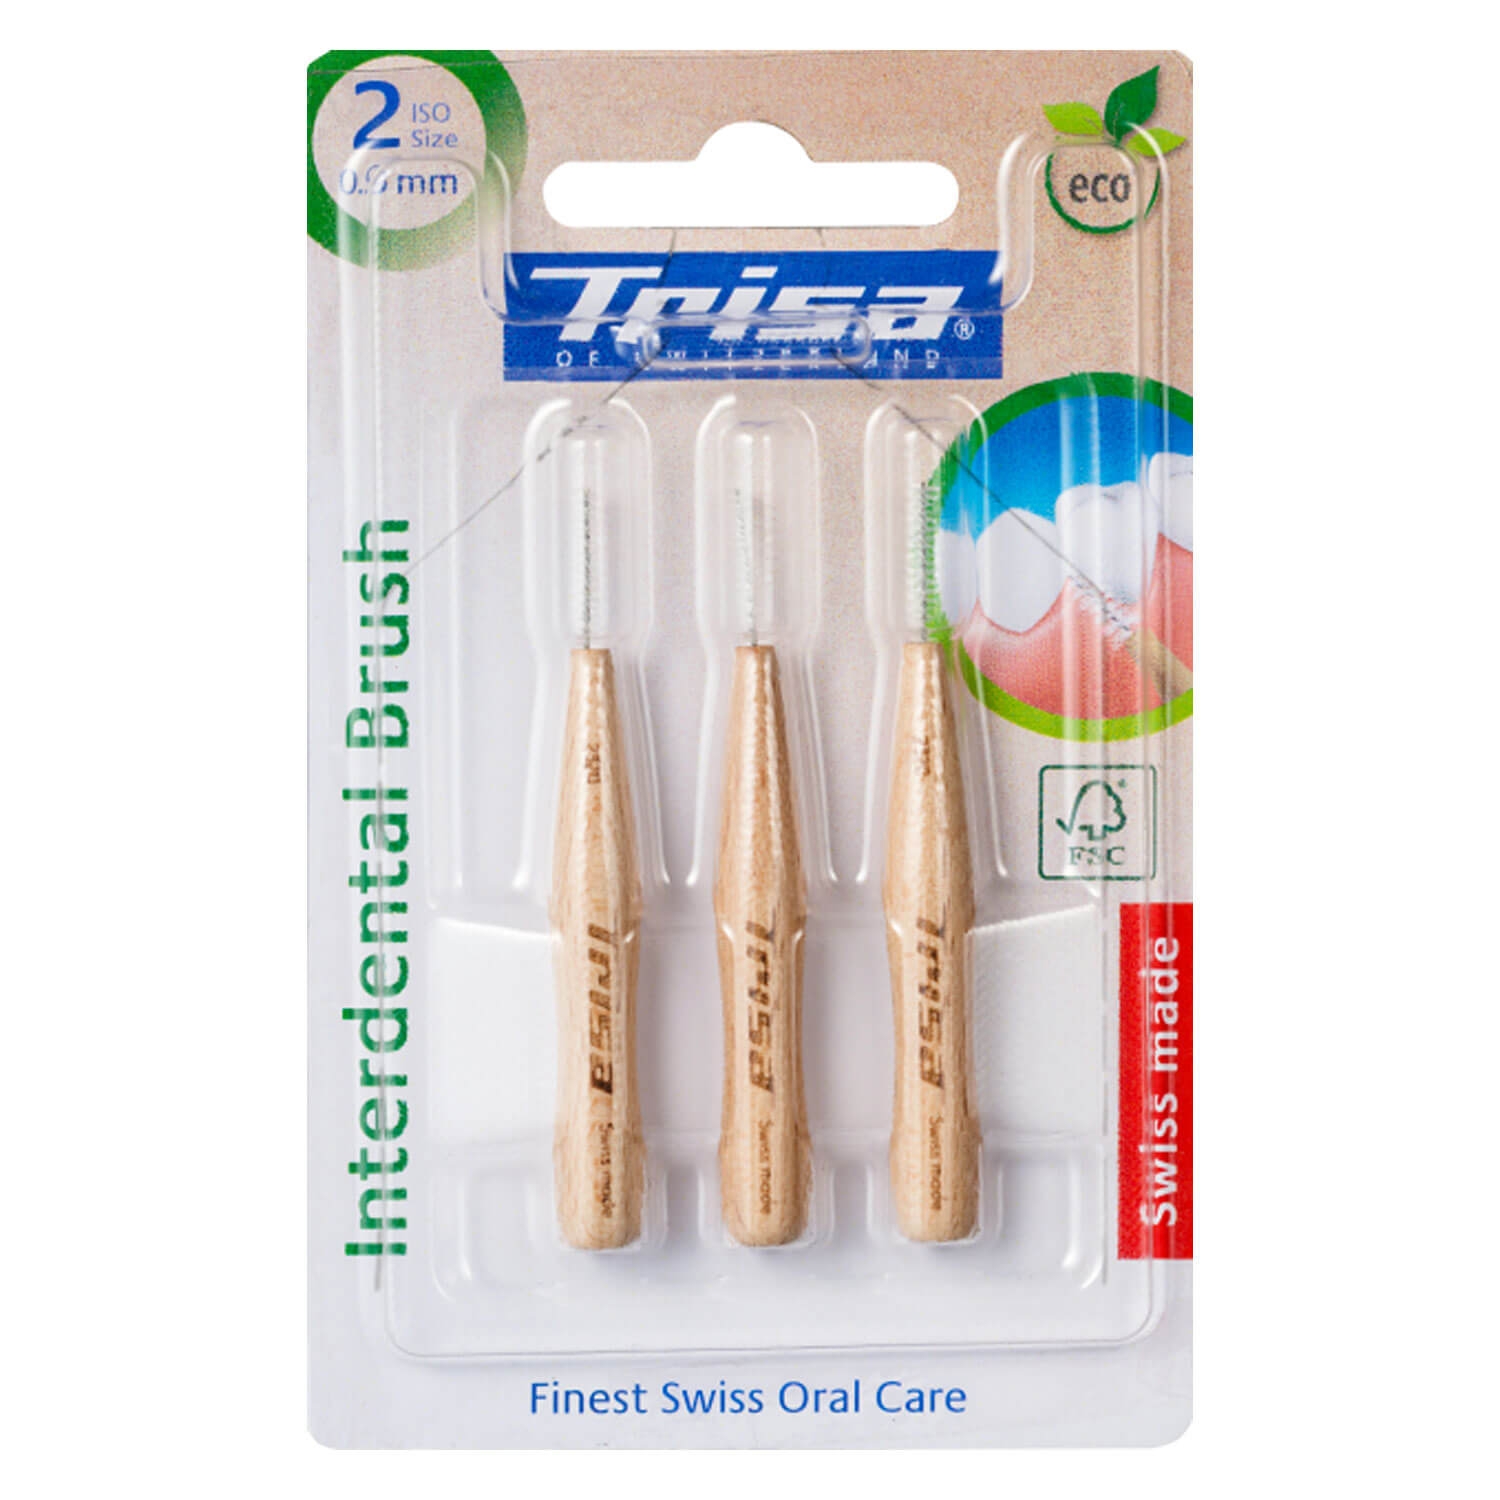 Produktbild von Trisa Oral Care - Interdental Brush Holz 0.9mm